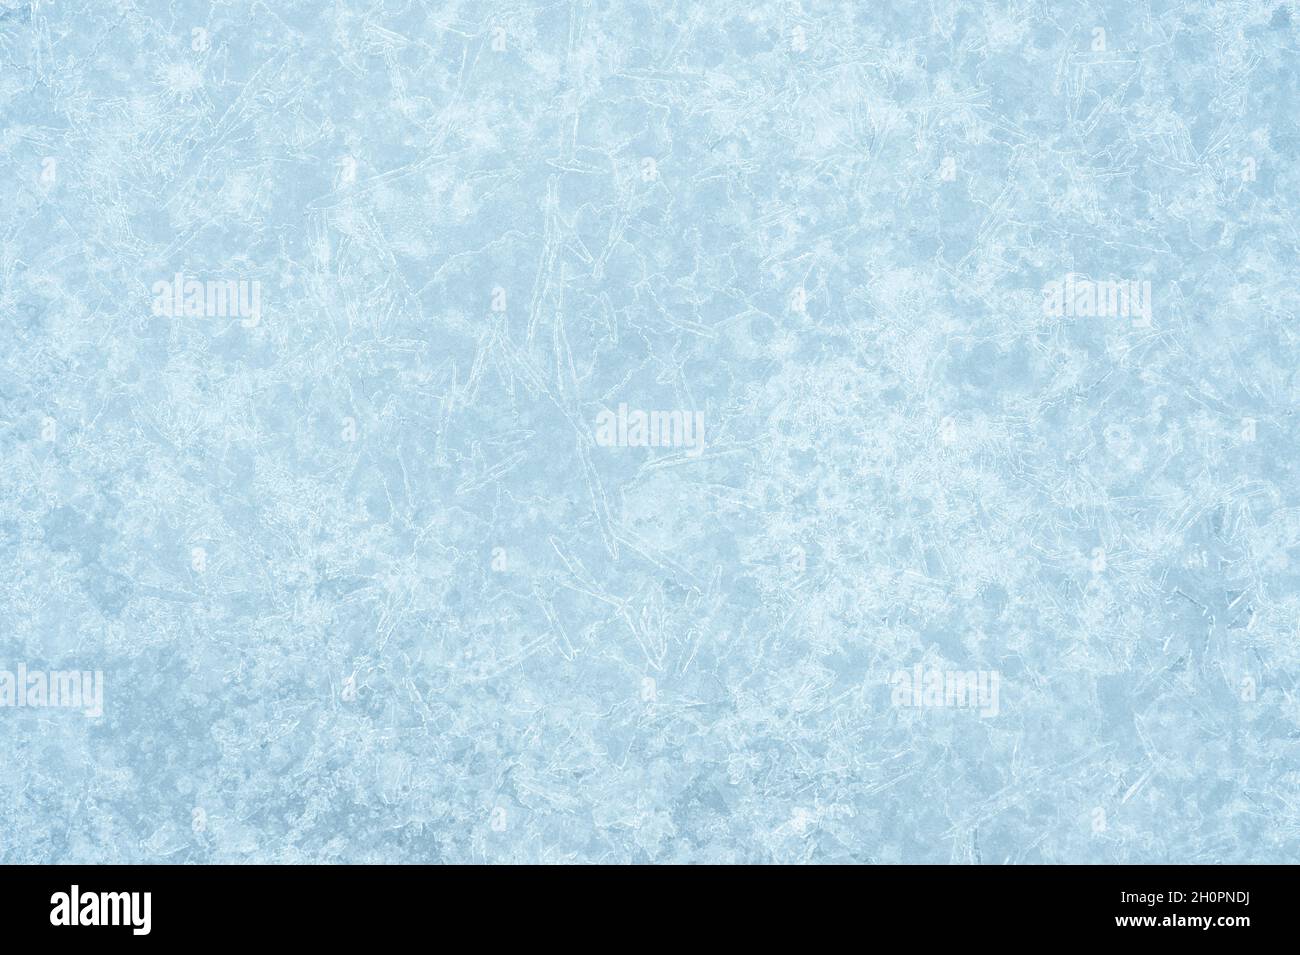 Das hellgrau-blaue Eis ist strukturiert mit einem leuchtenden lockigen Muster von Eisadern im weißen Frost. Hintergrund. Stockfoto